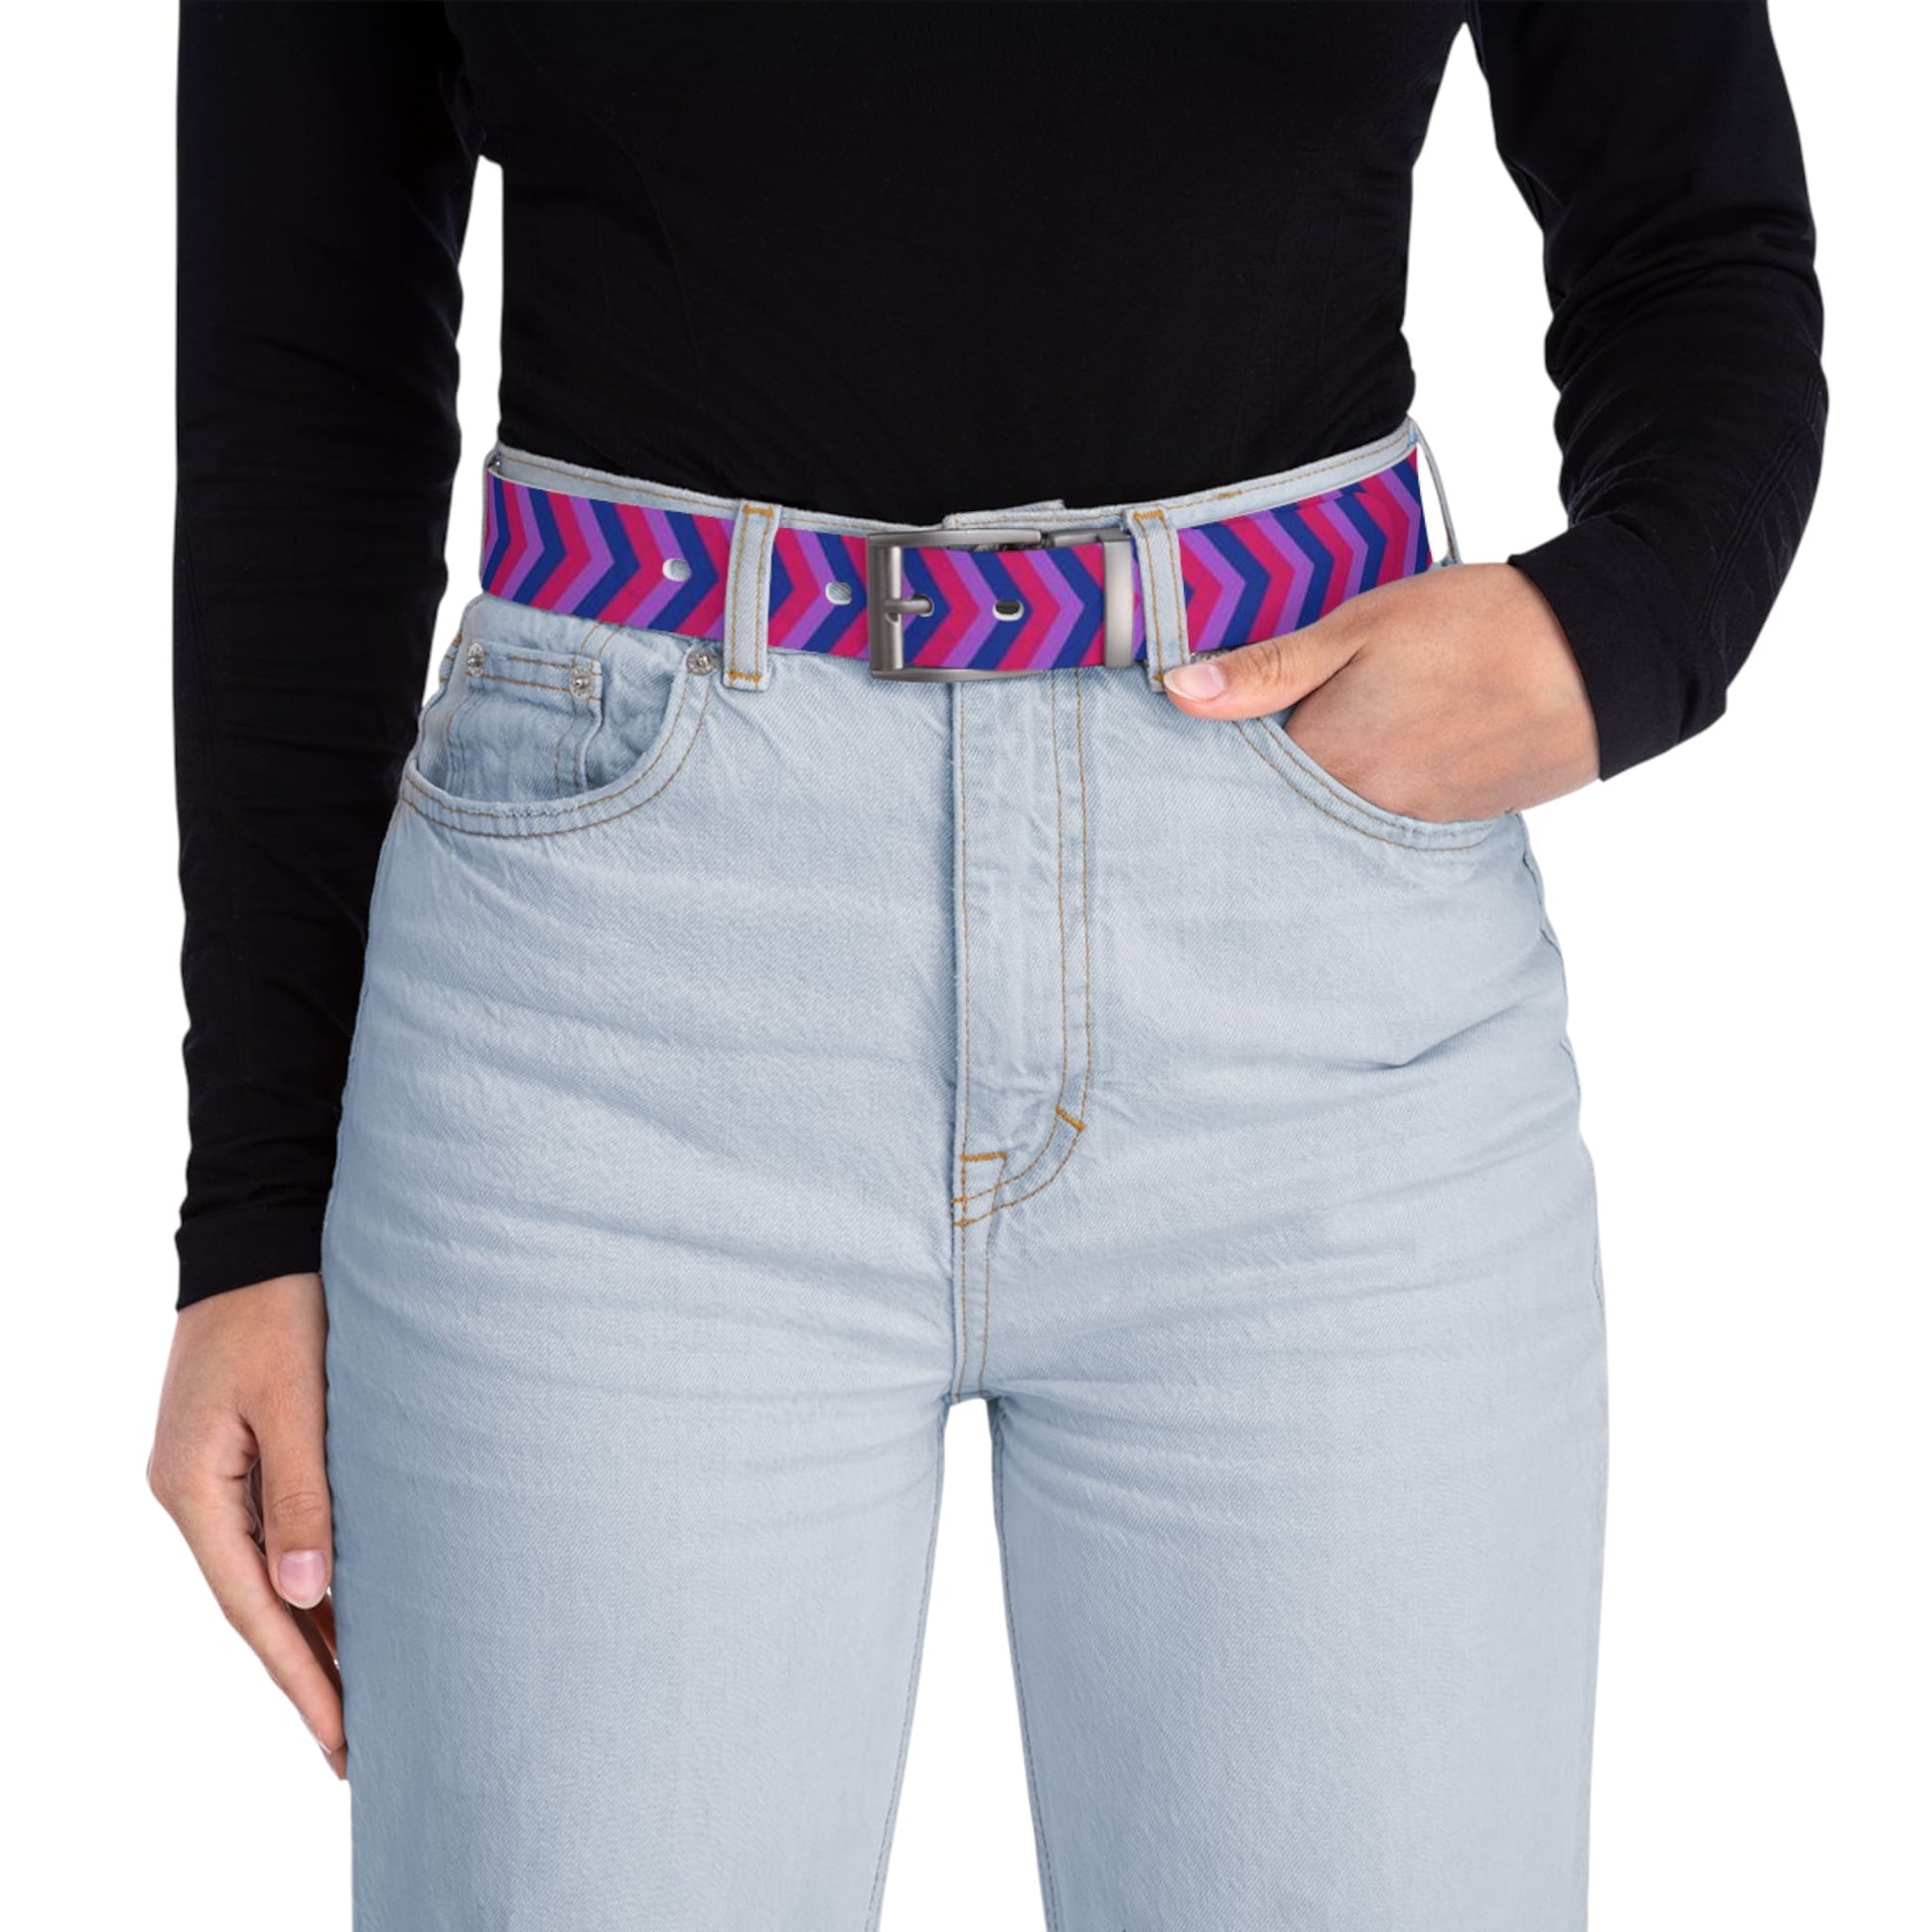 Subtle bisexual belt